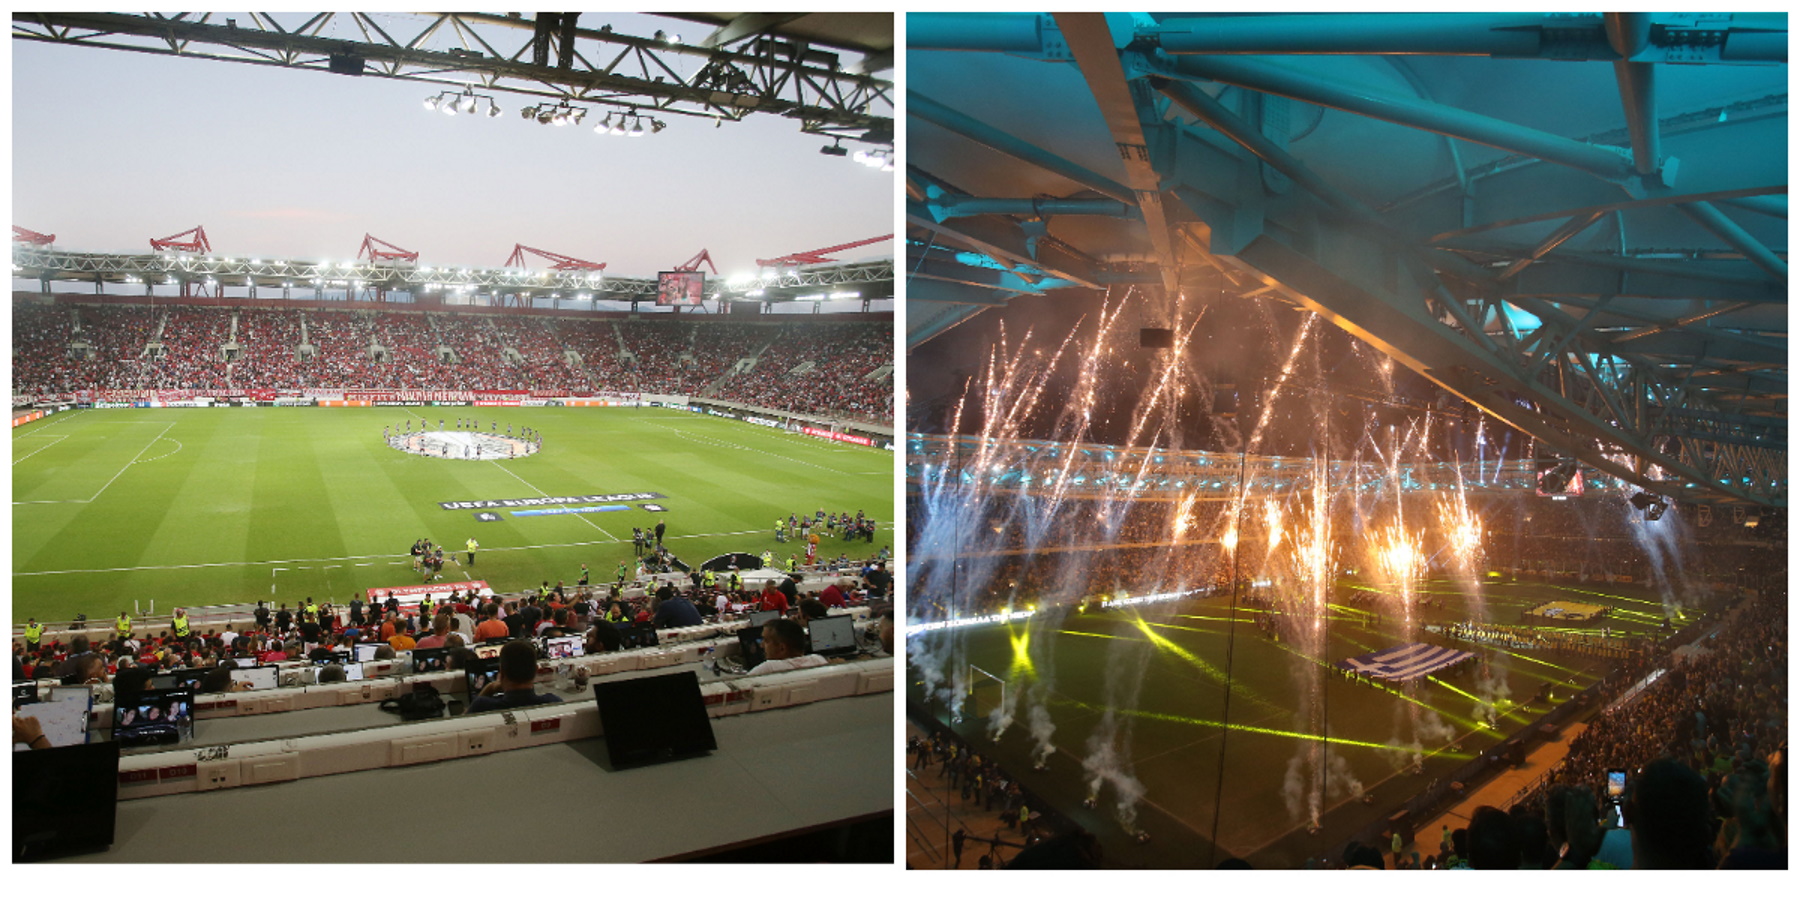 Η UEFA στέλνει ευρωπαϊκούς τελικούς σε «Καραϊσκάκης» και «OPAP Arena», Super Cup και Conference League στην Ελλάδα